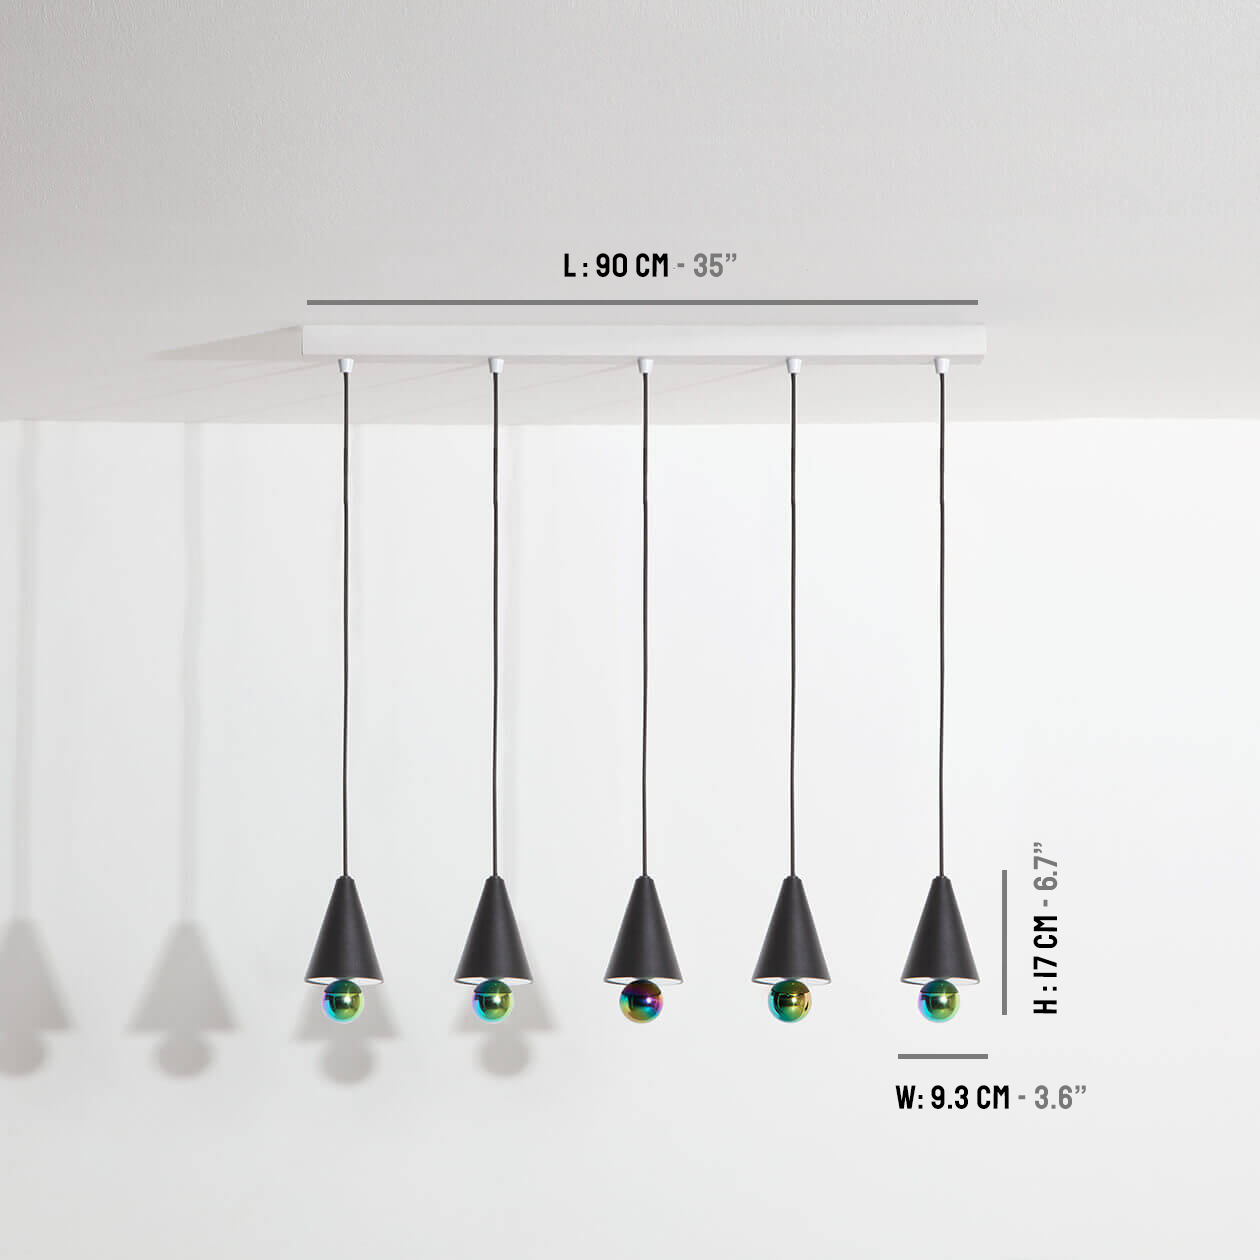 Pendant-system-5-pendants-Cherry-LED-black-Petite-Friture-dimensions